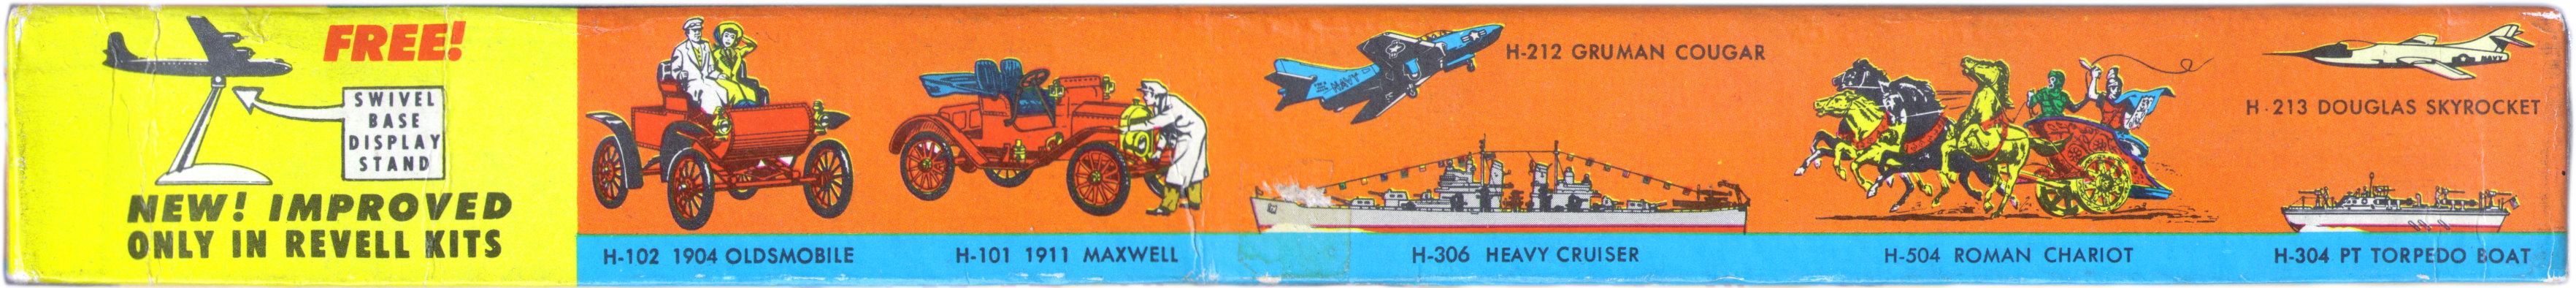 Коробка Revell H206 Boeing B-47 Giant Stratojet Bomber, Revell Inc, 1954